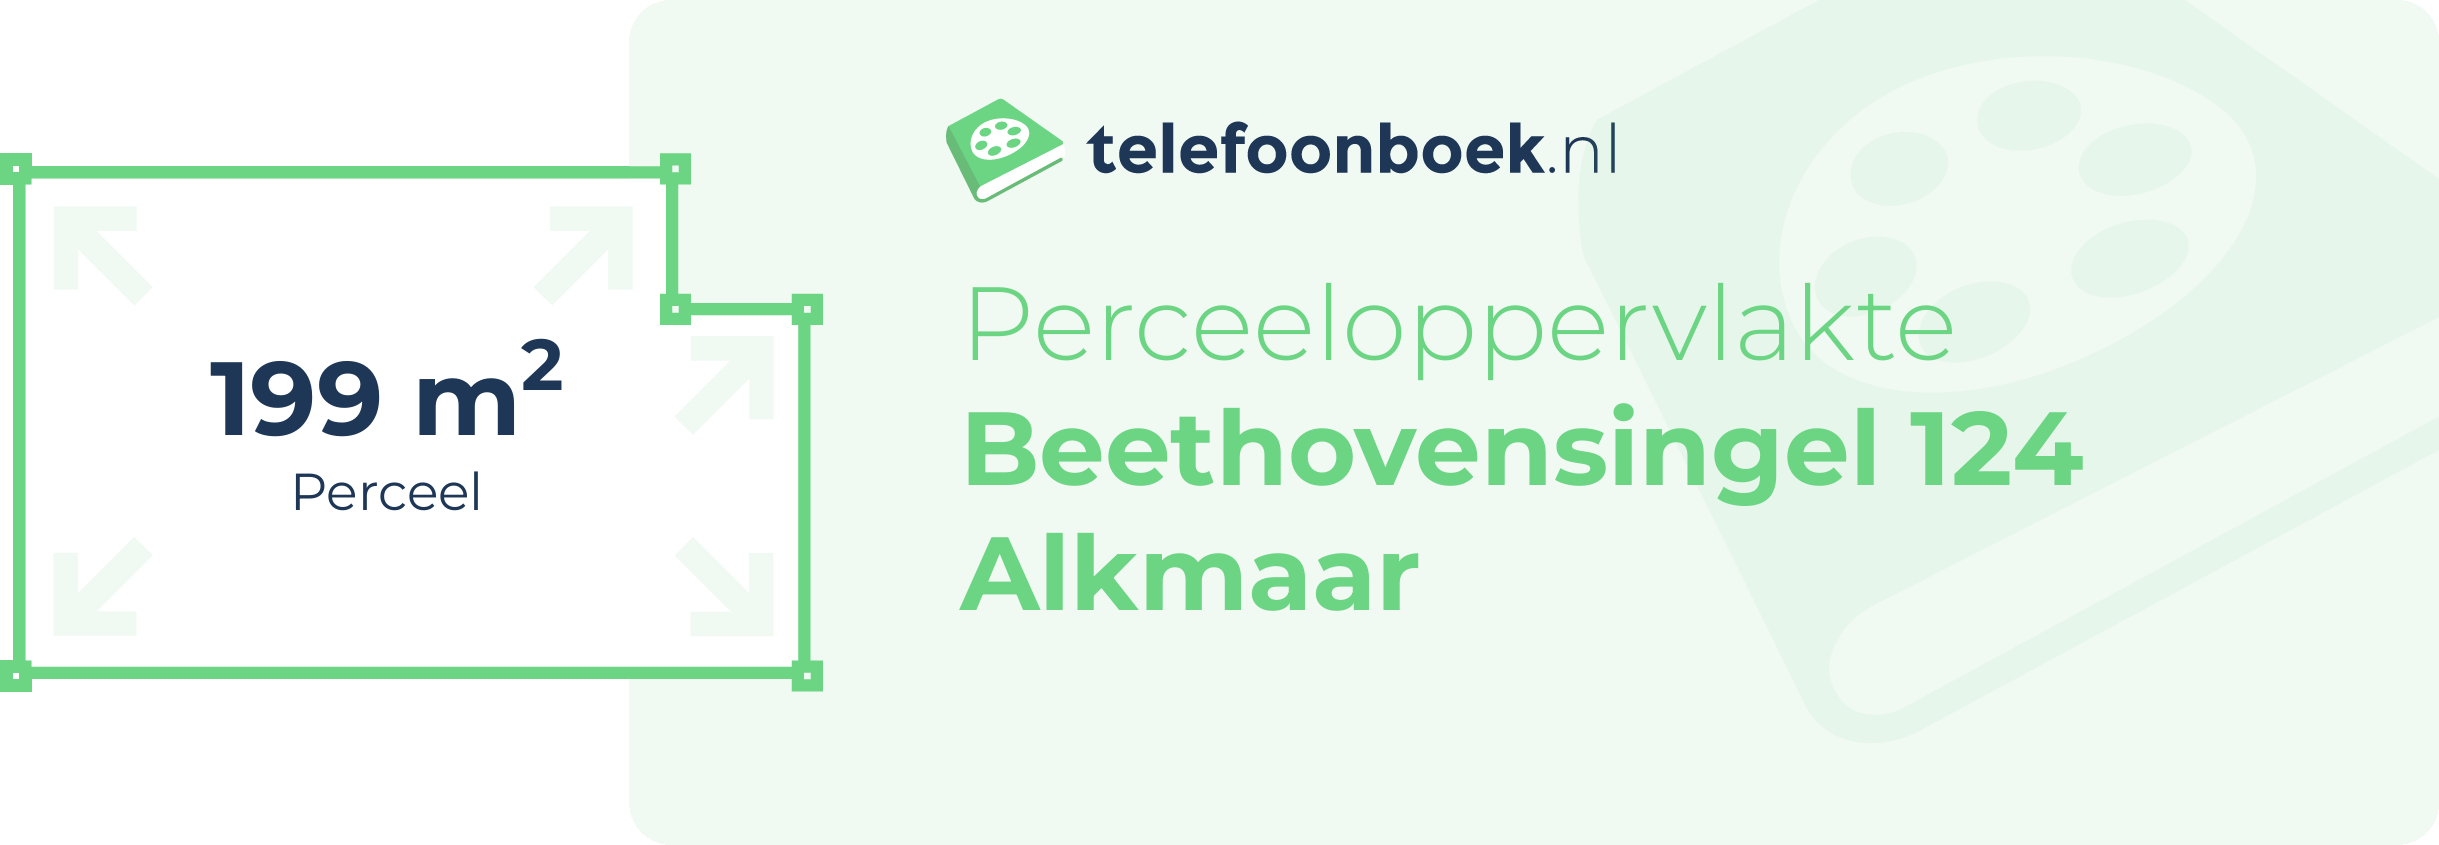 Perceeloppervlakte Beethovensingel 124 Alkmaar